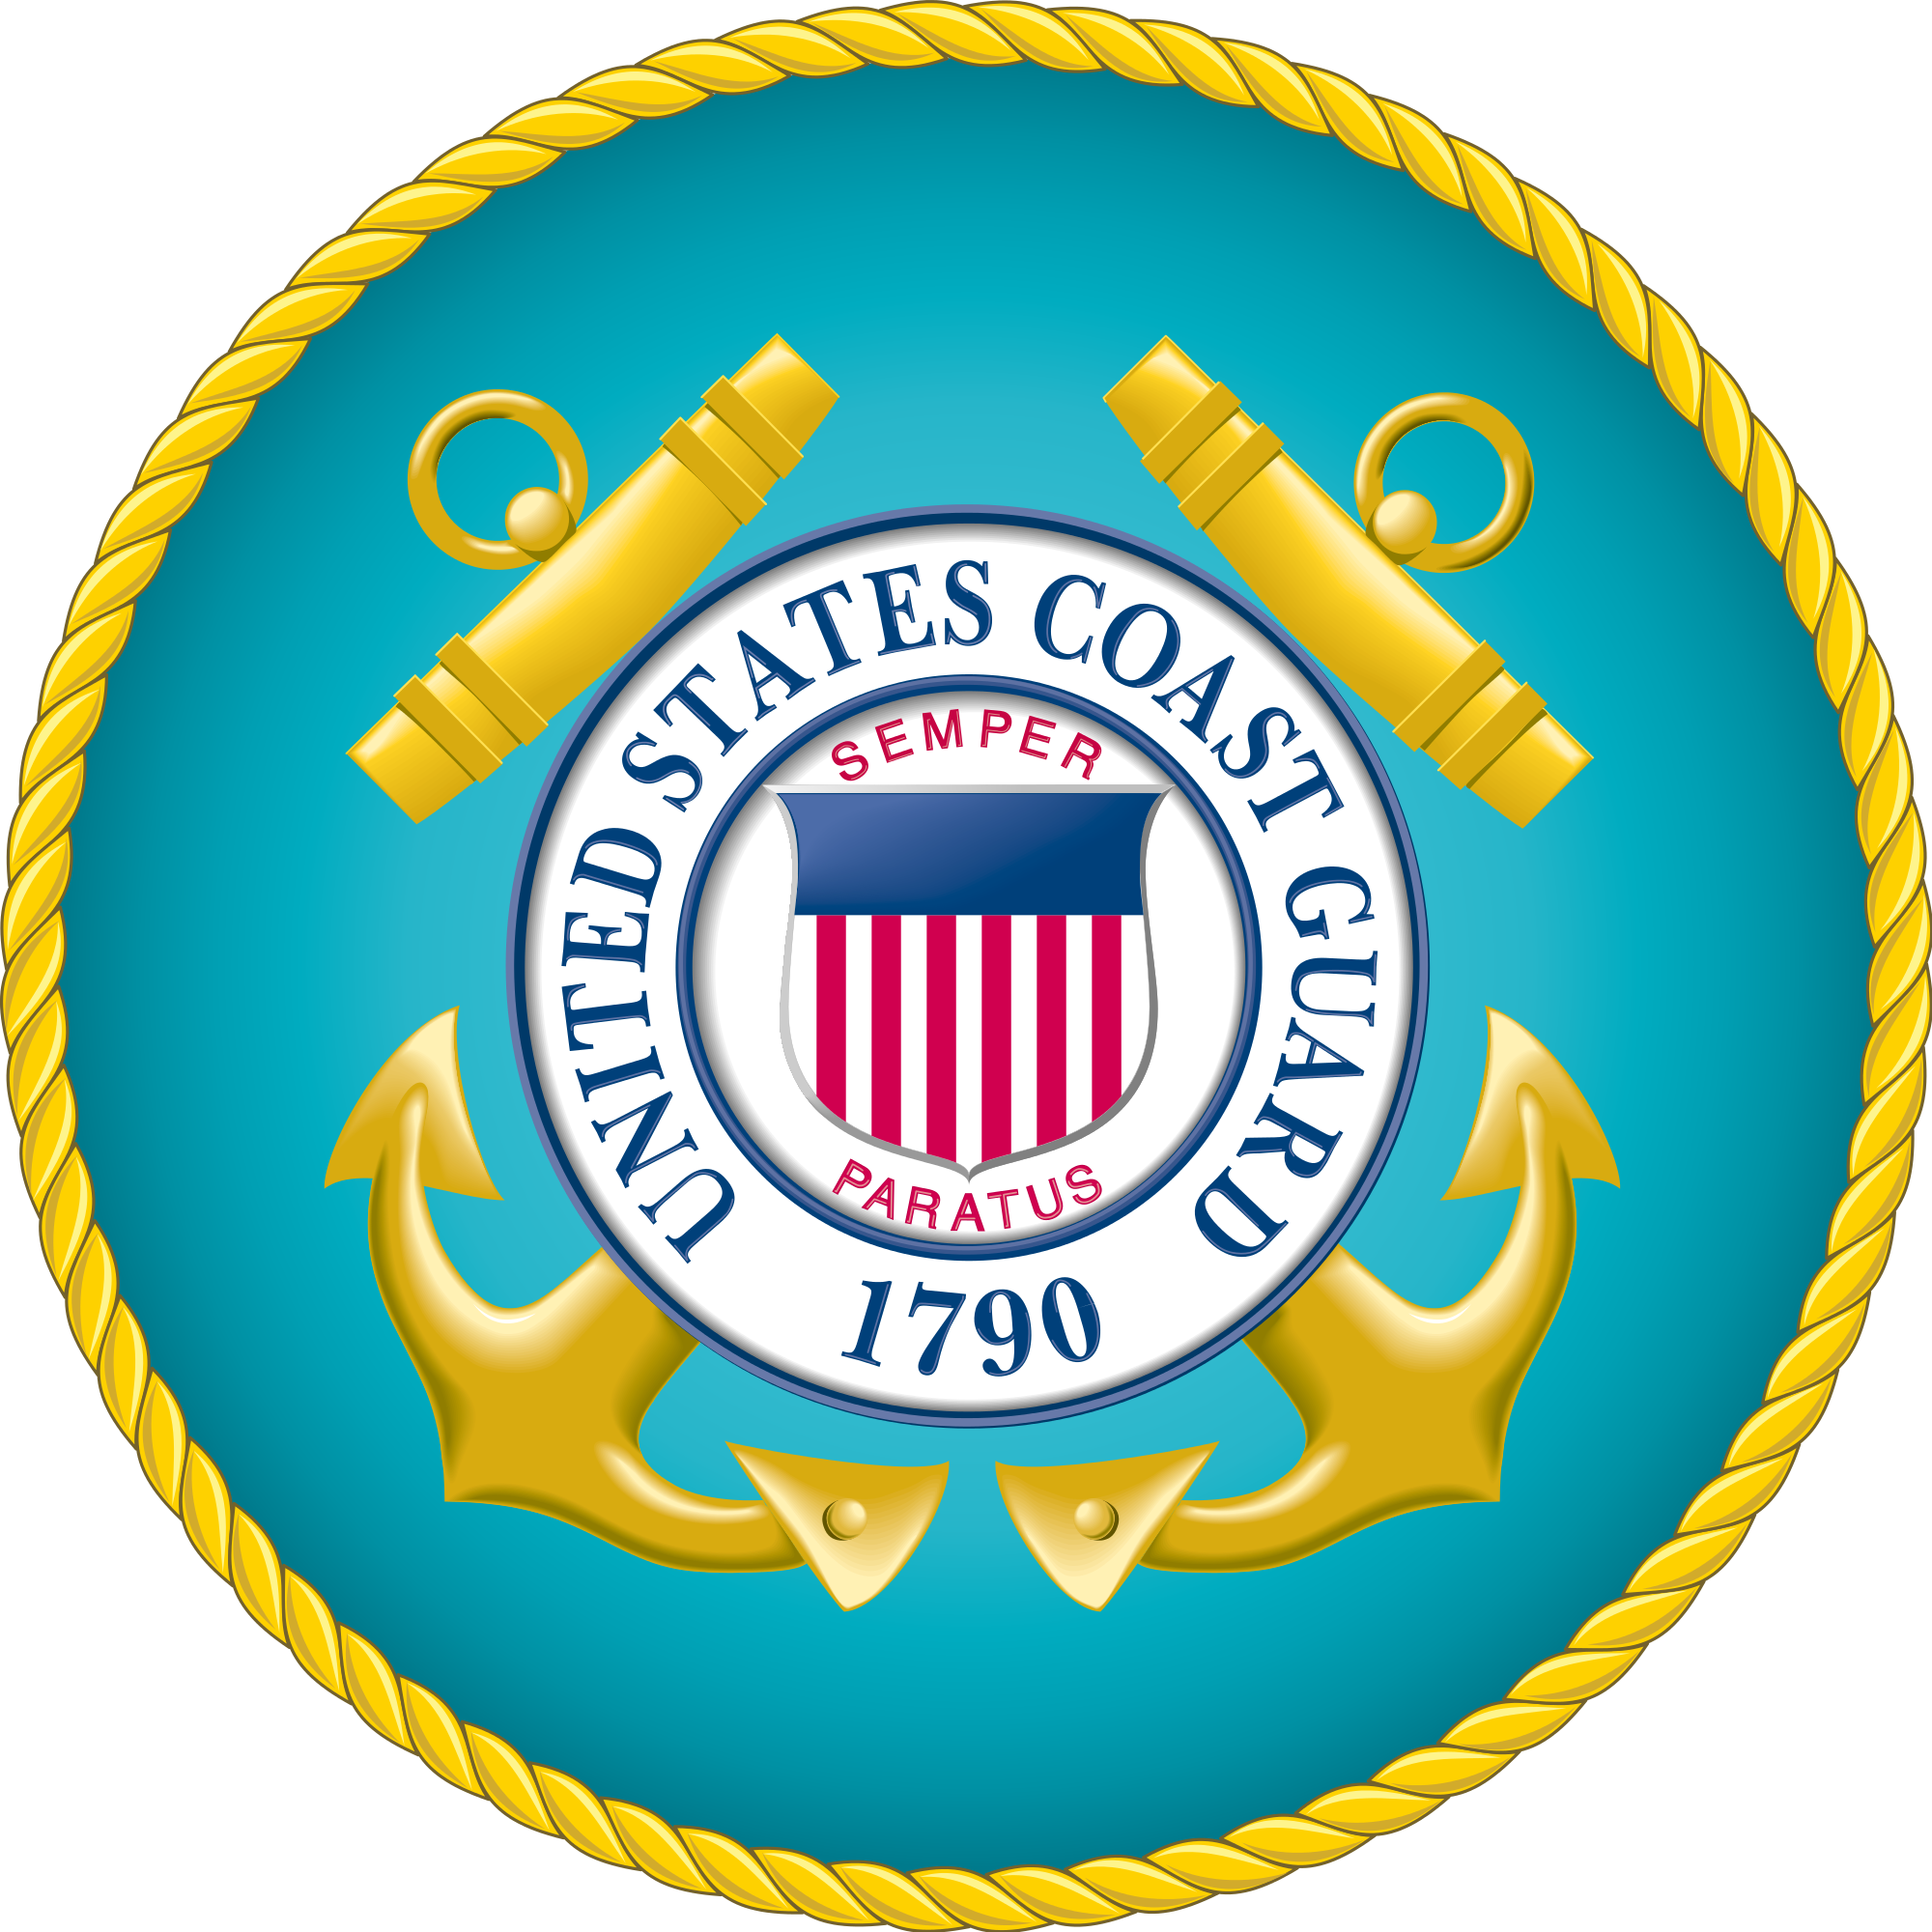 Us Coastguard Seal - United States Coast Guard Seal (2000x2000)